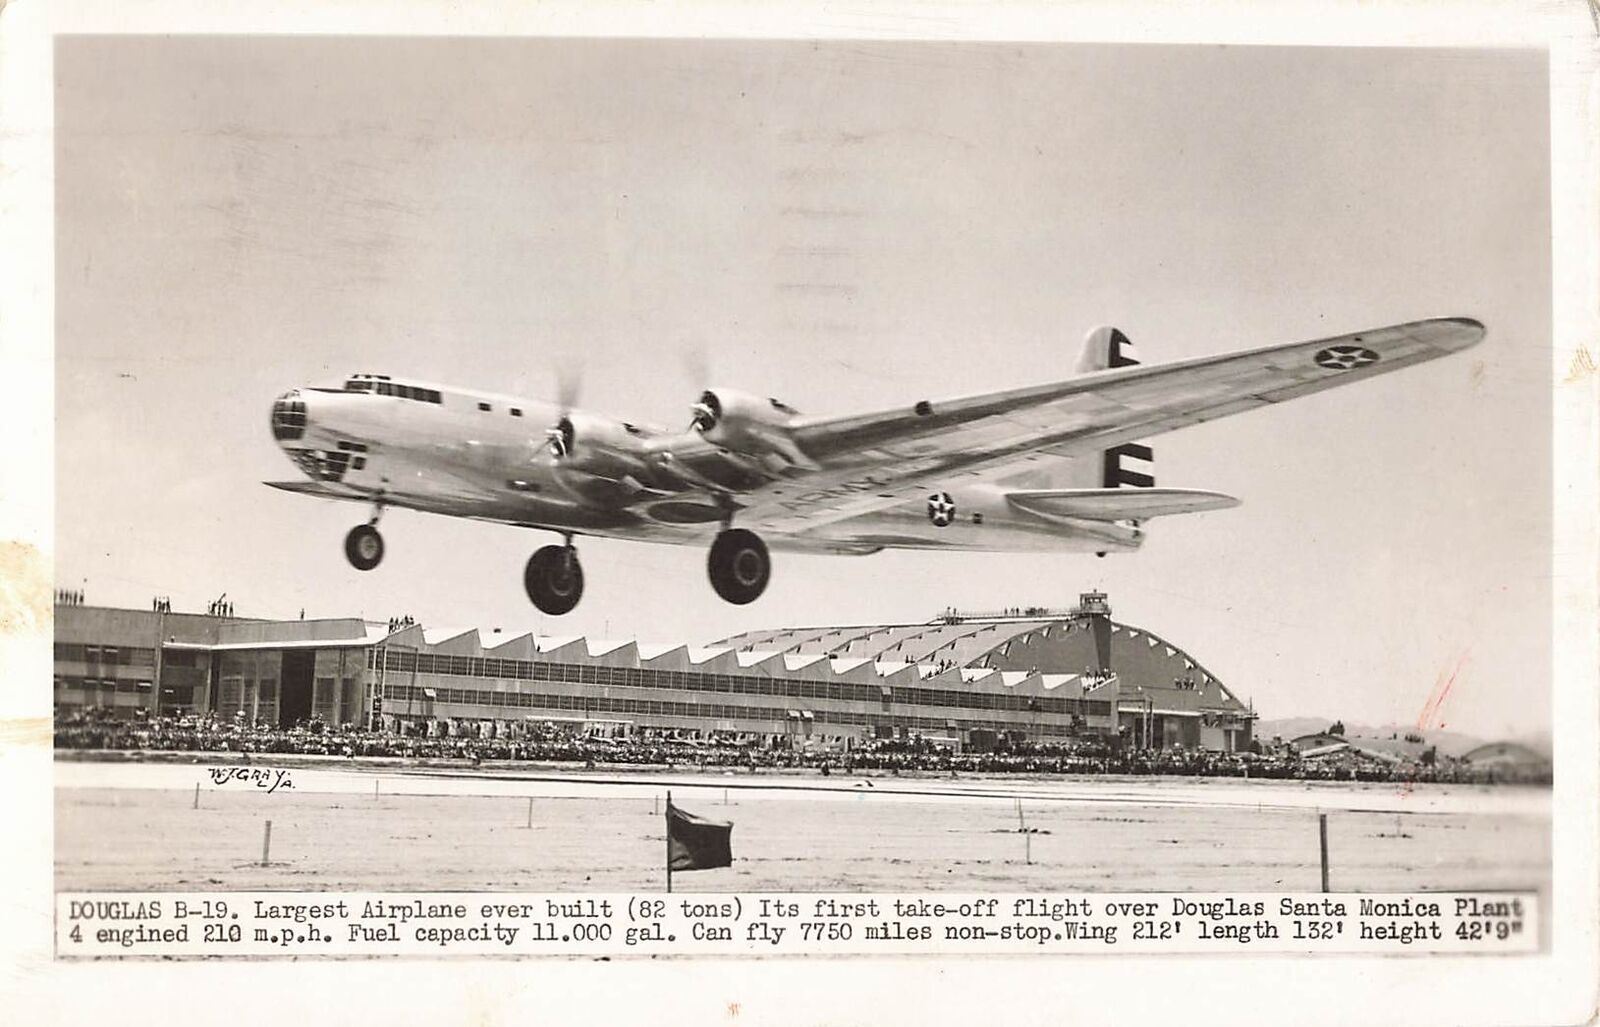 1941 RPPC DOUGLAS B-19 ww2 Photo Postcard BUY DEFENSE BONDS cancel LA,CA plane